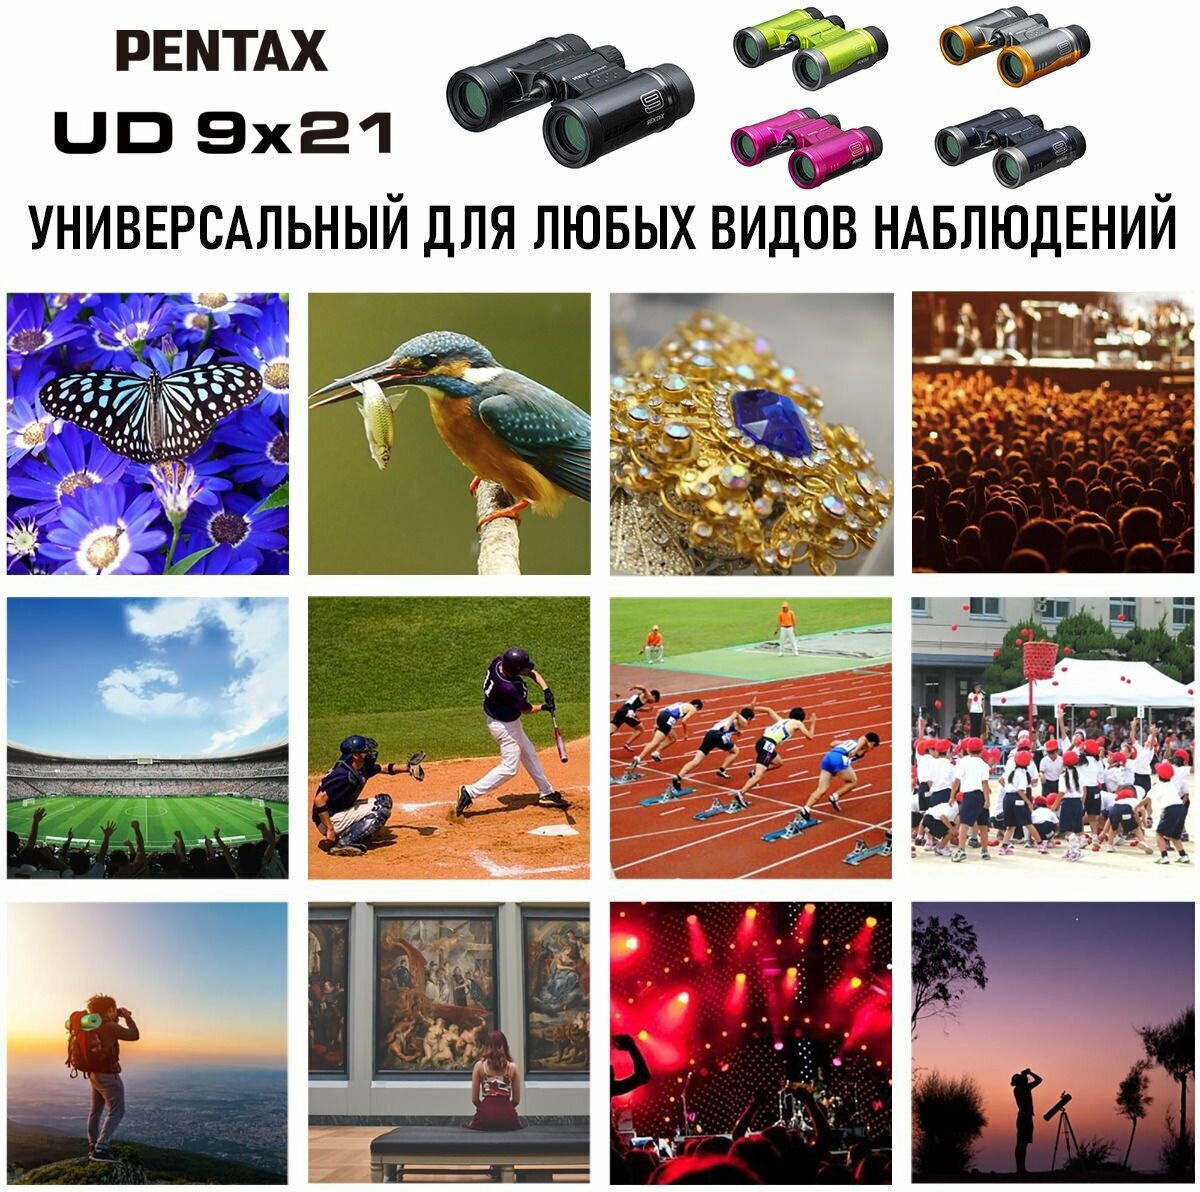 Бинокль PENTAX UD 9x21